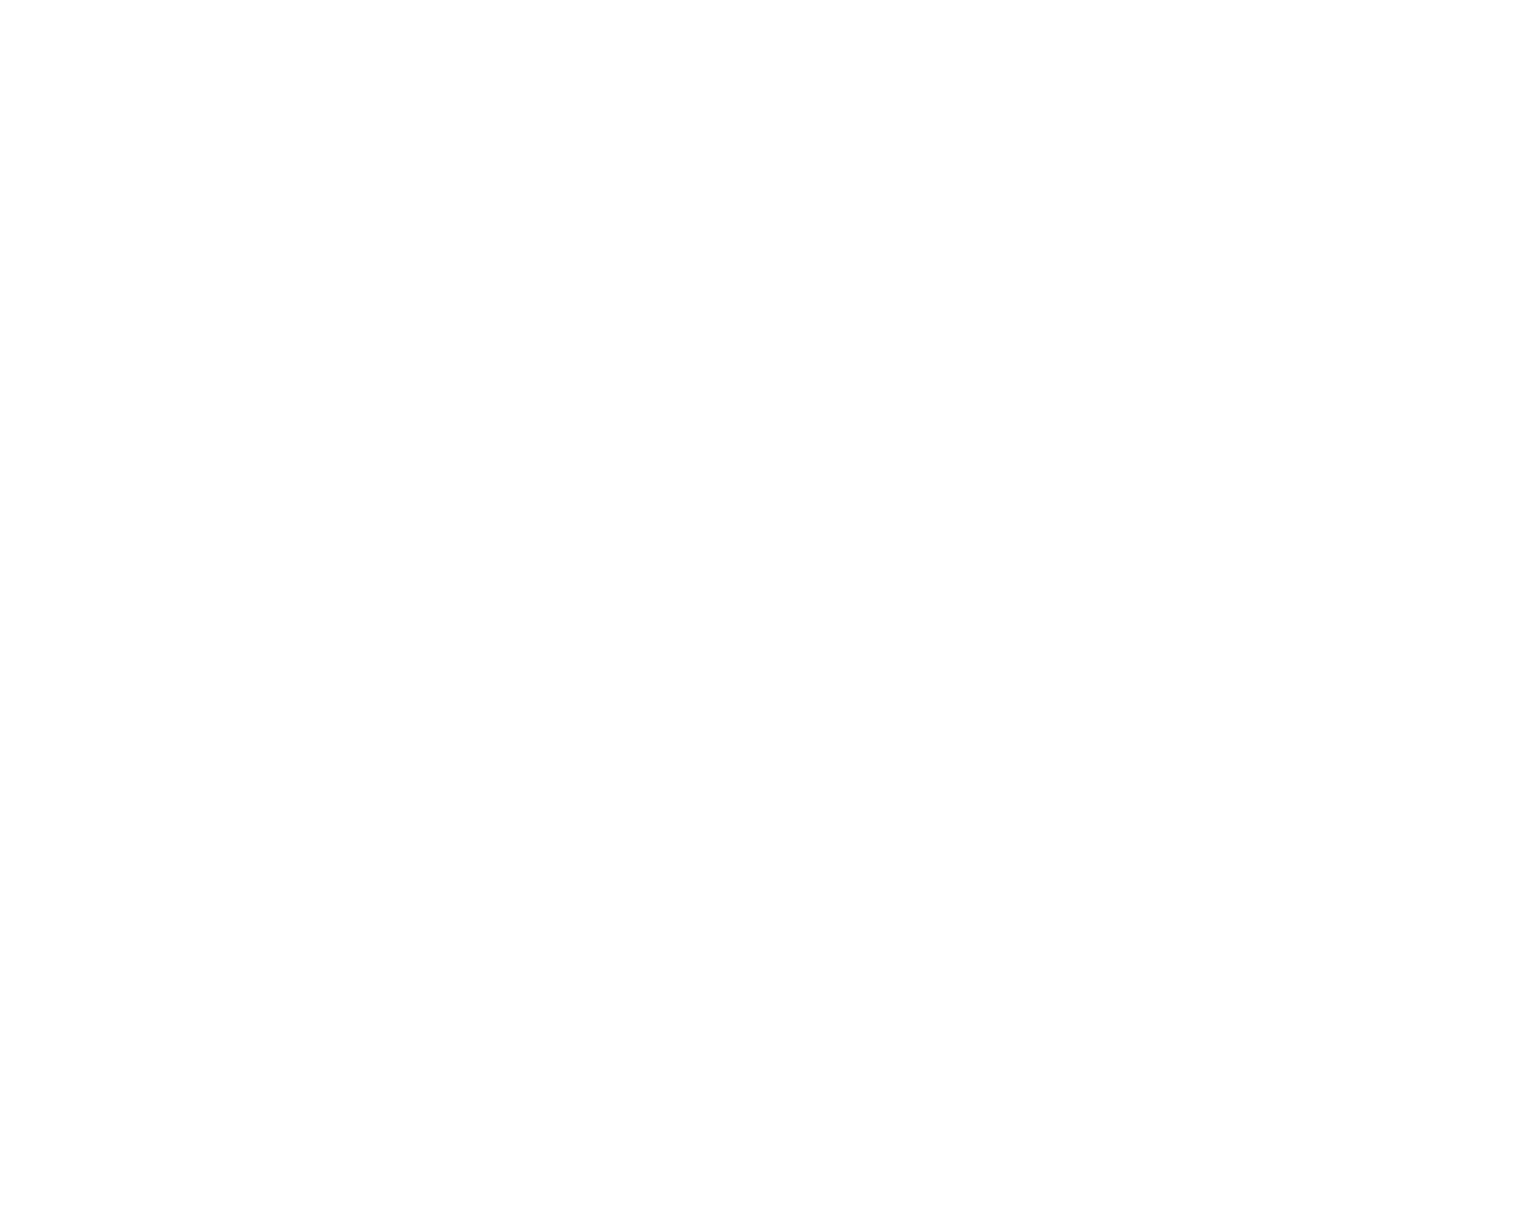 Osotspa logo pour fonds sombres (PNG transparent)